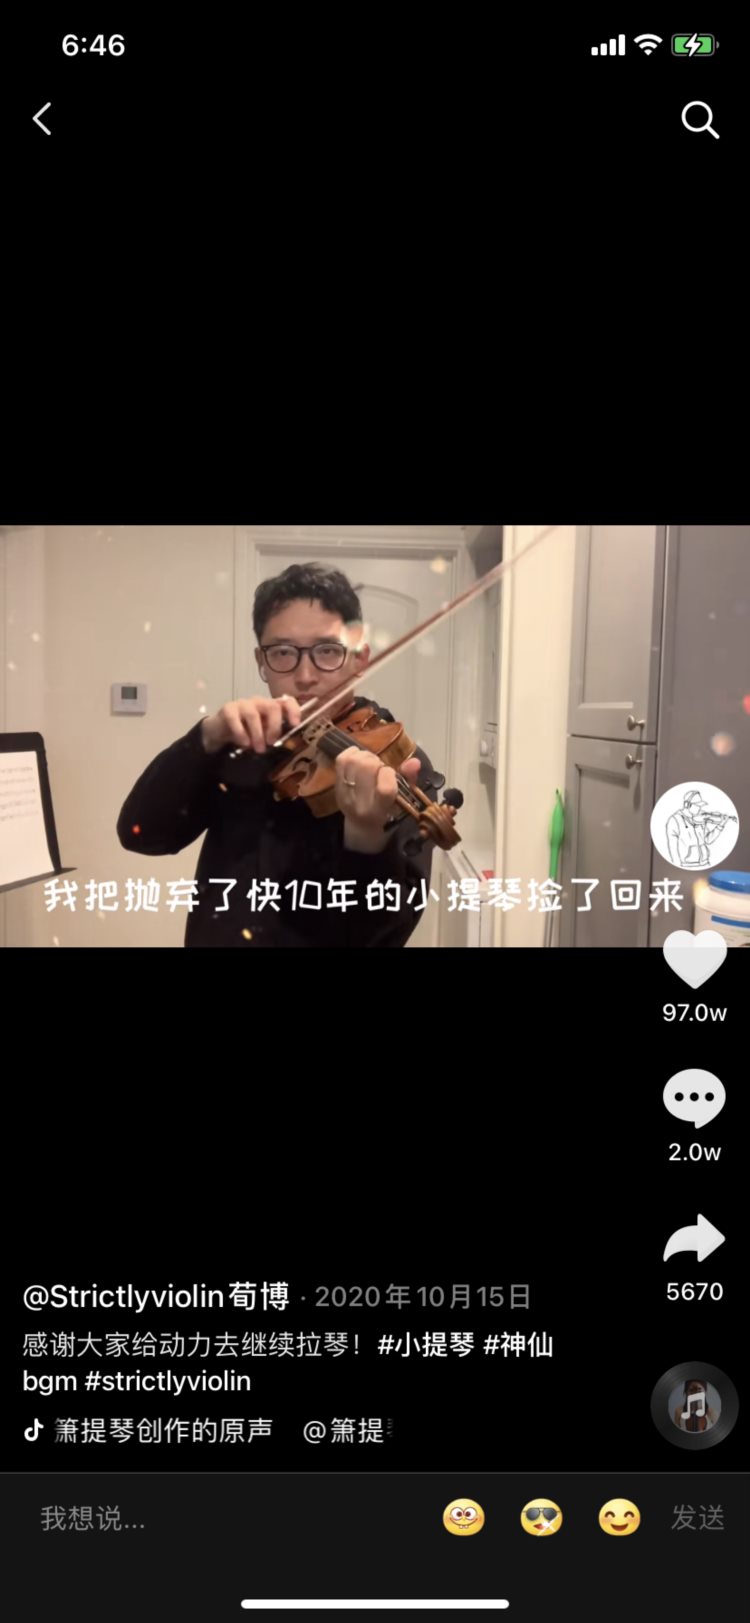 和小提琴分别十年后，他在抖音获得看待音乐新视角